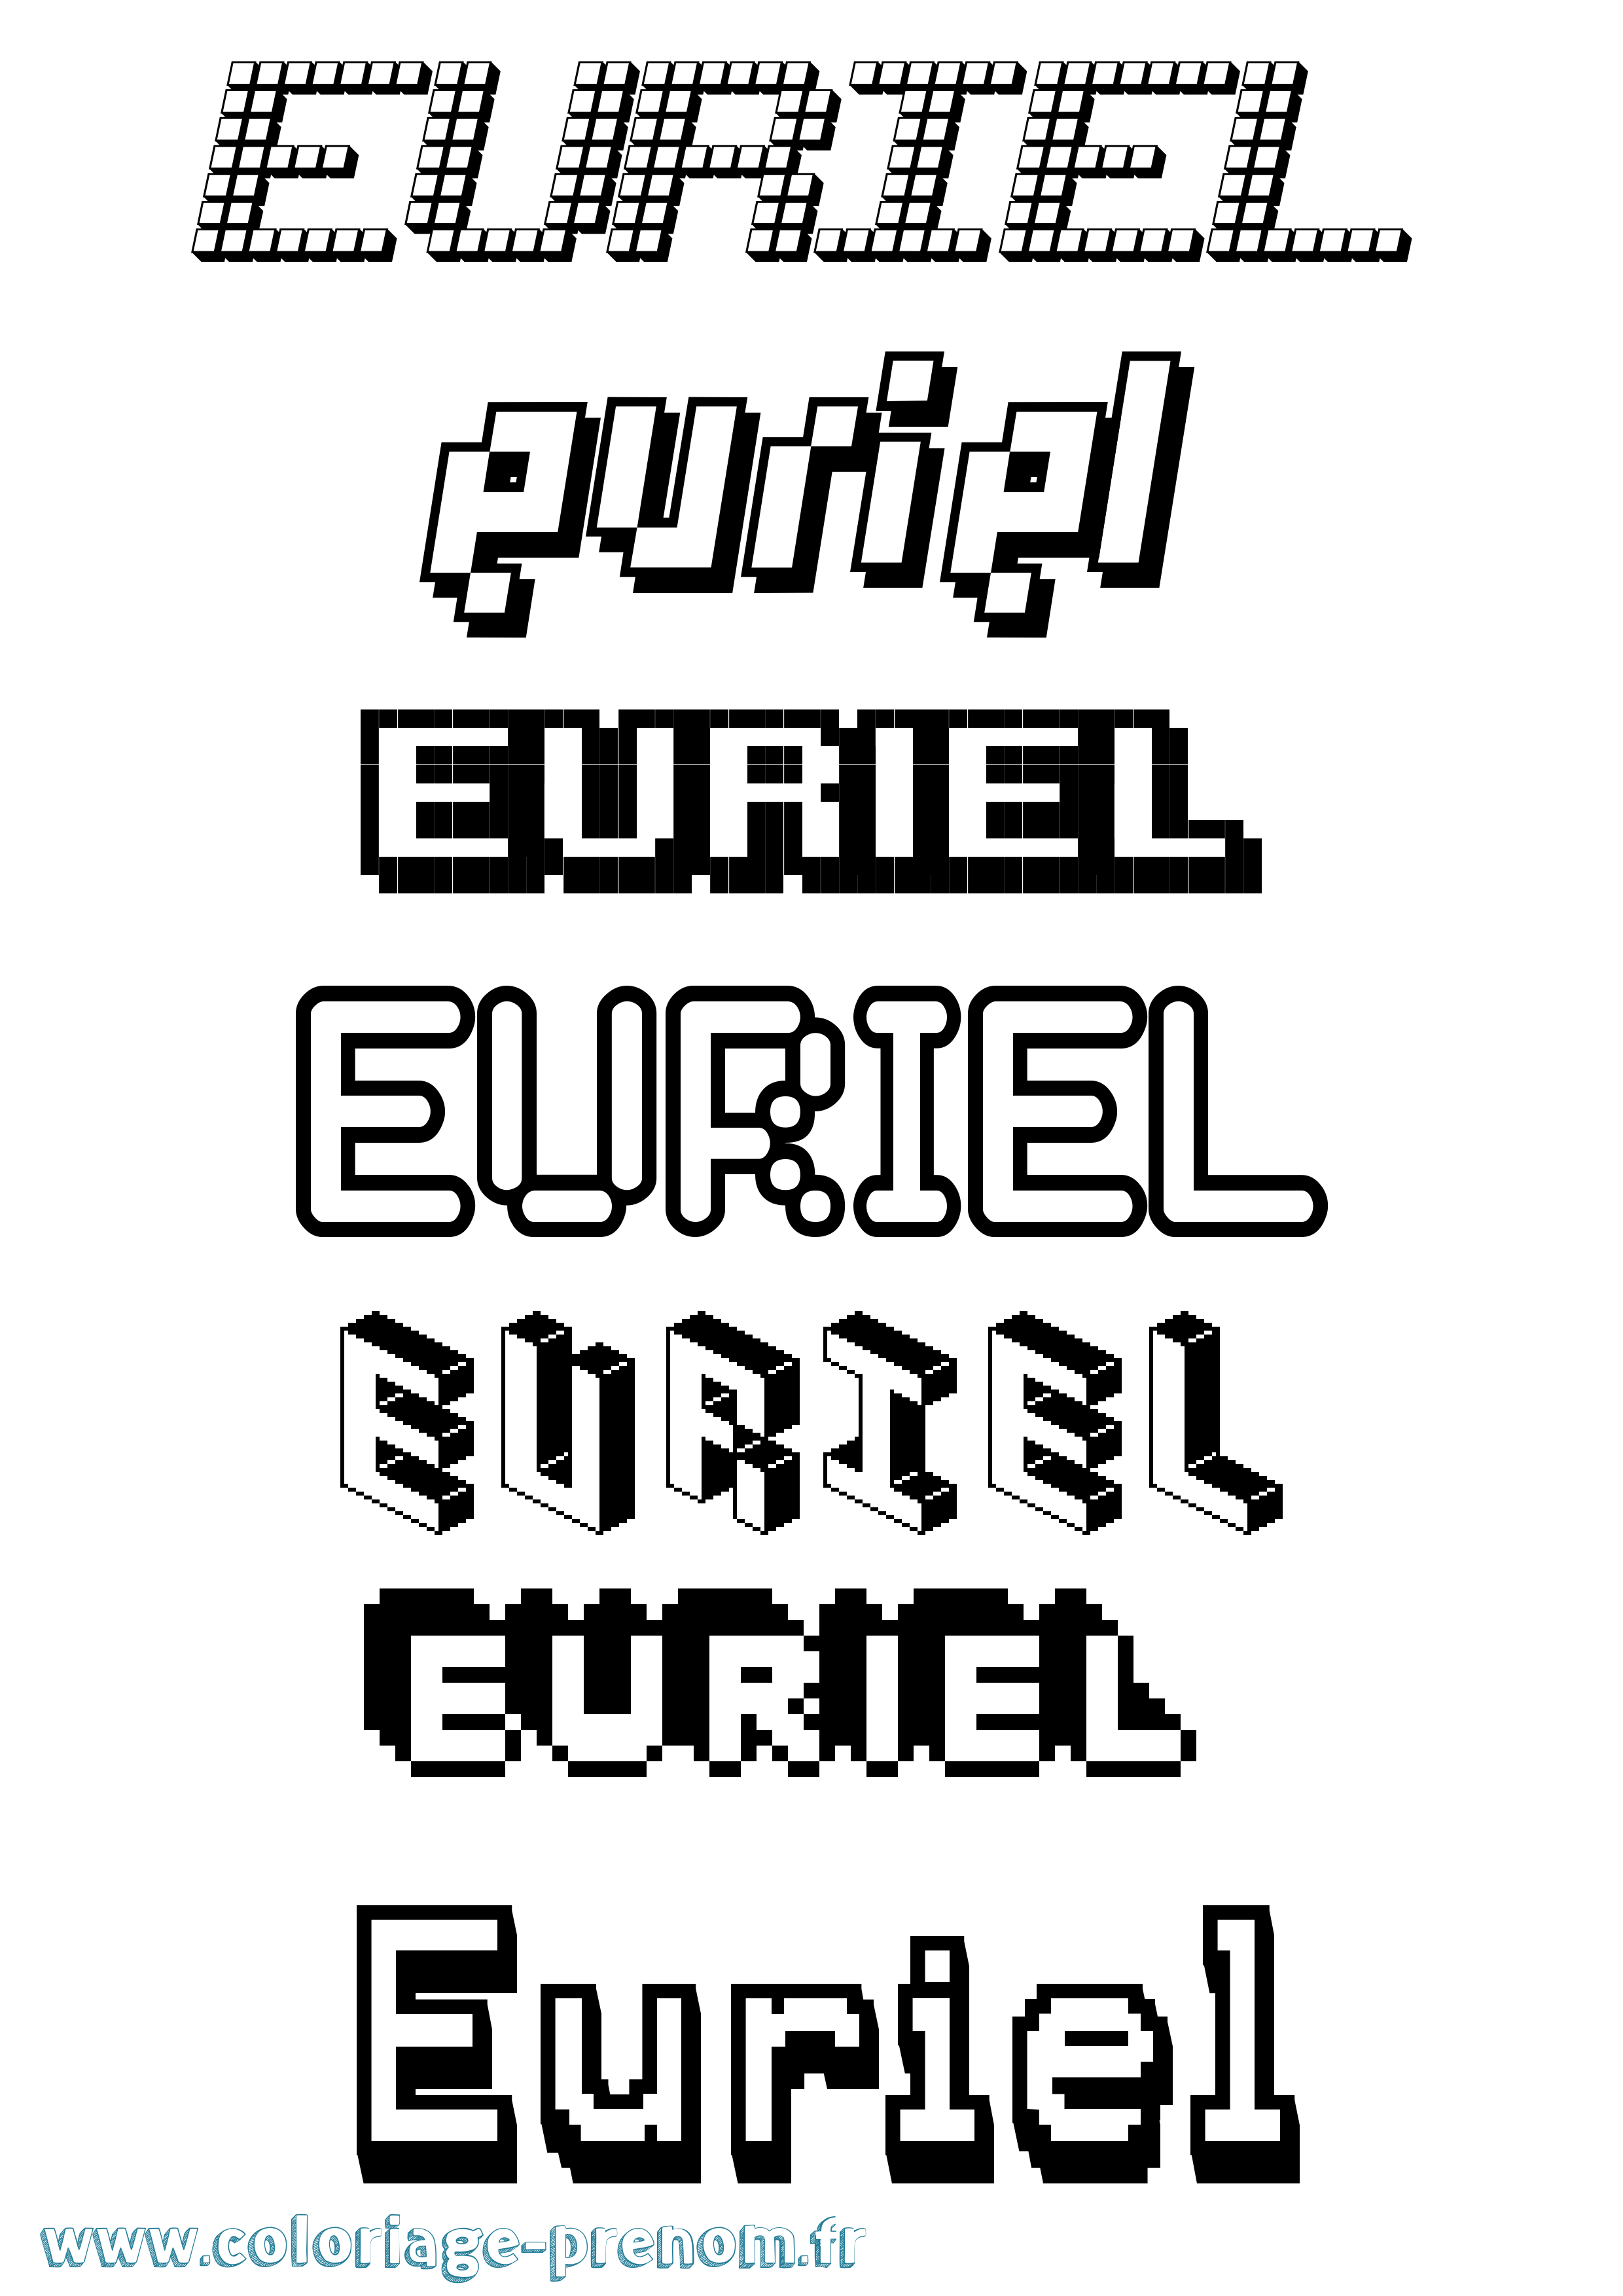 Coloriage prénom Euriel Pixel